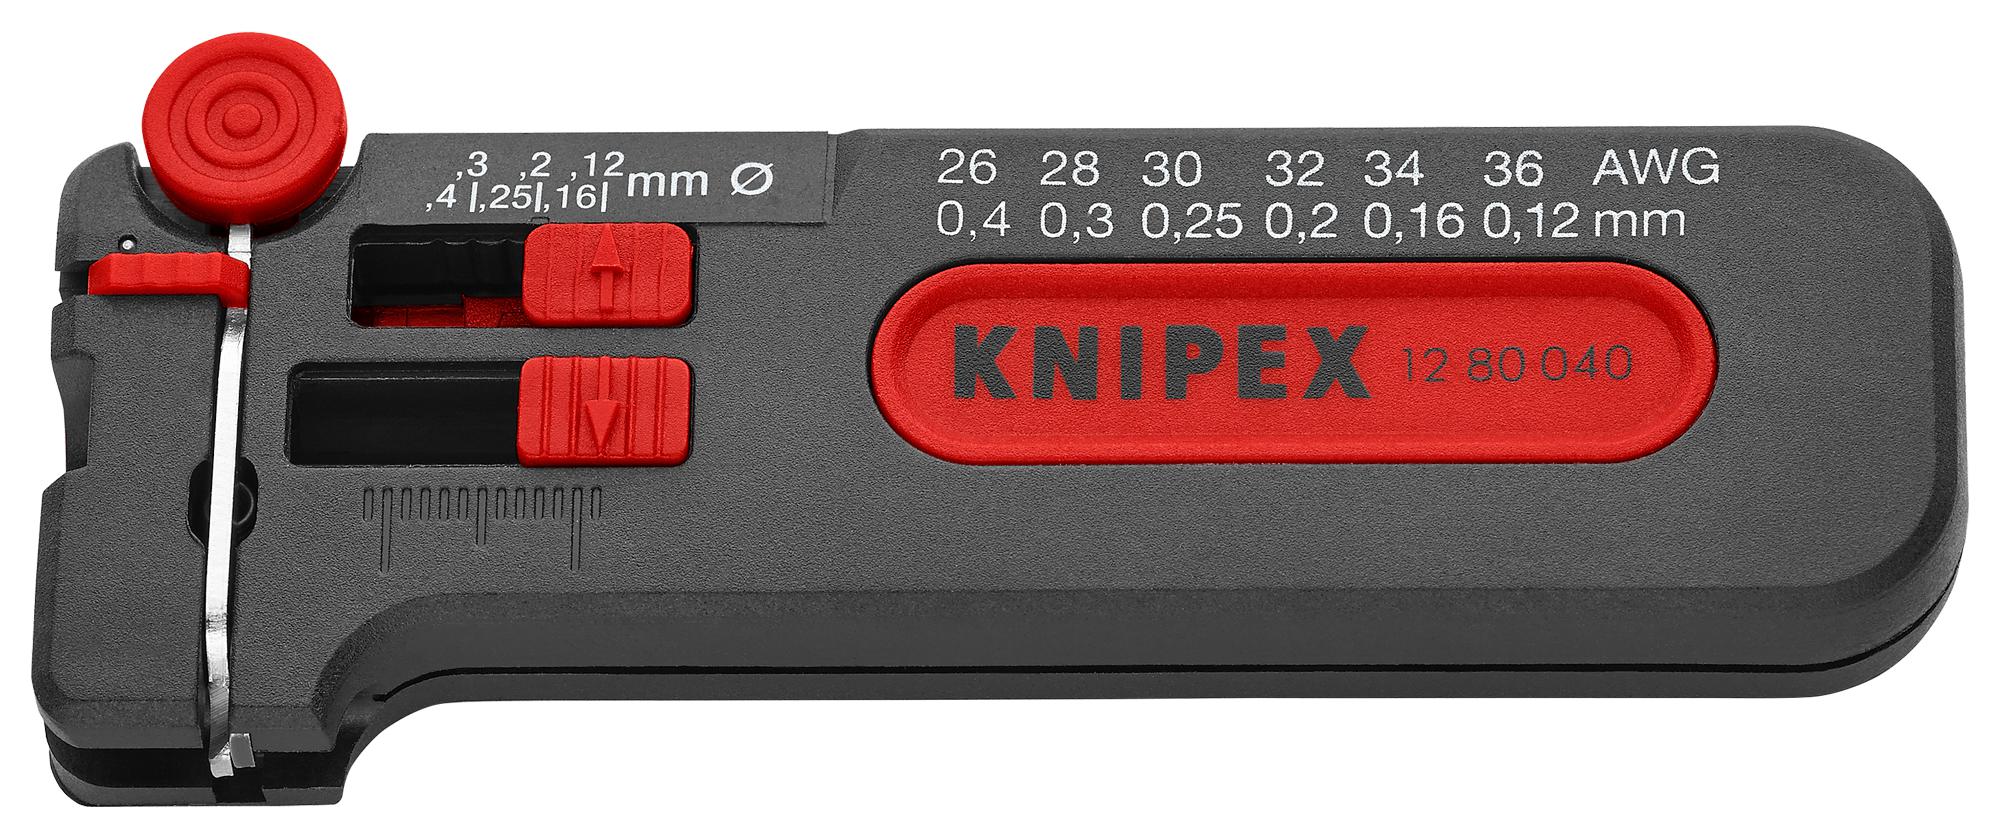 Knipex 12 80 040 Sb Mini Wire Stripper